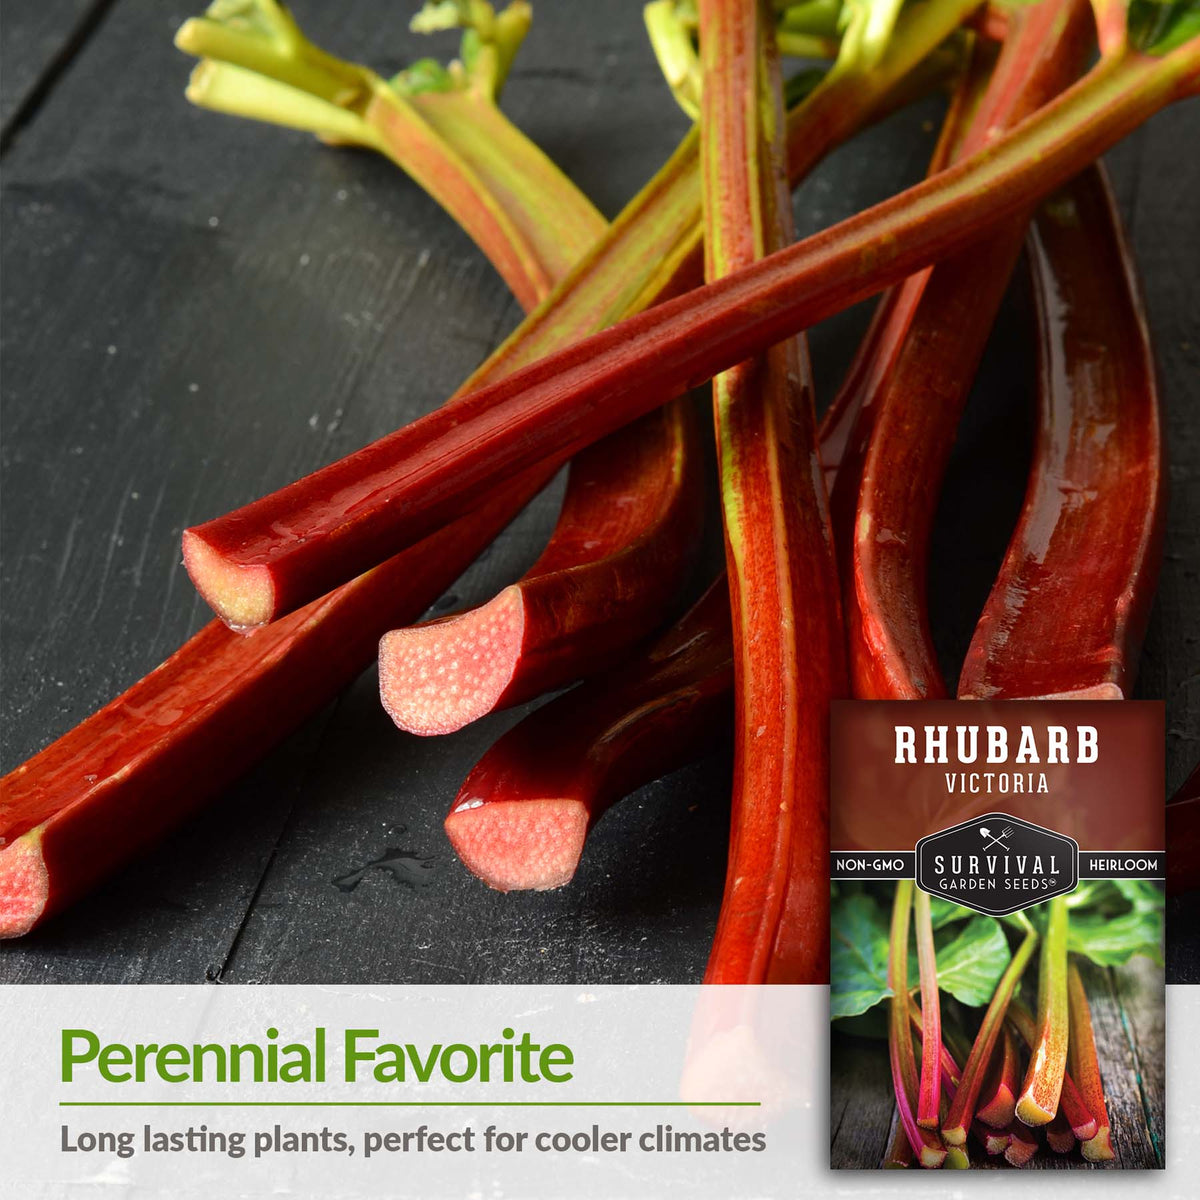 Rhubarb is a perennial favorite